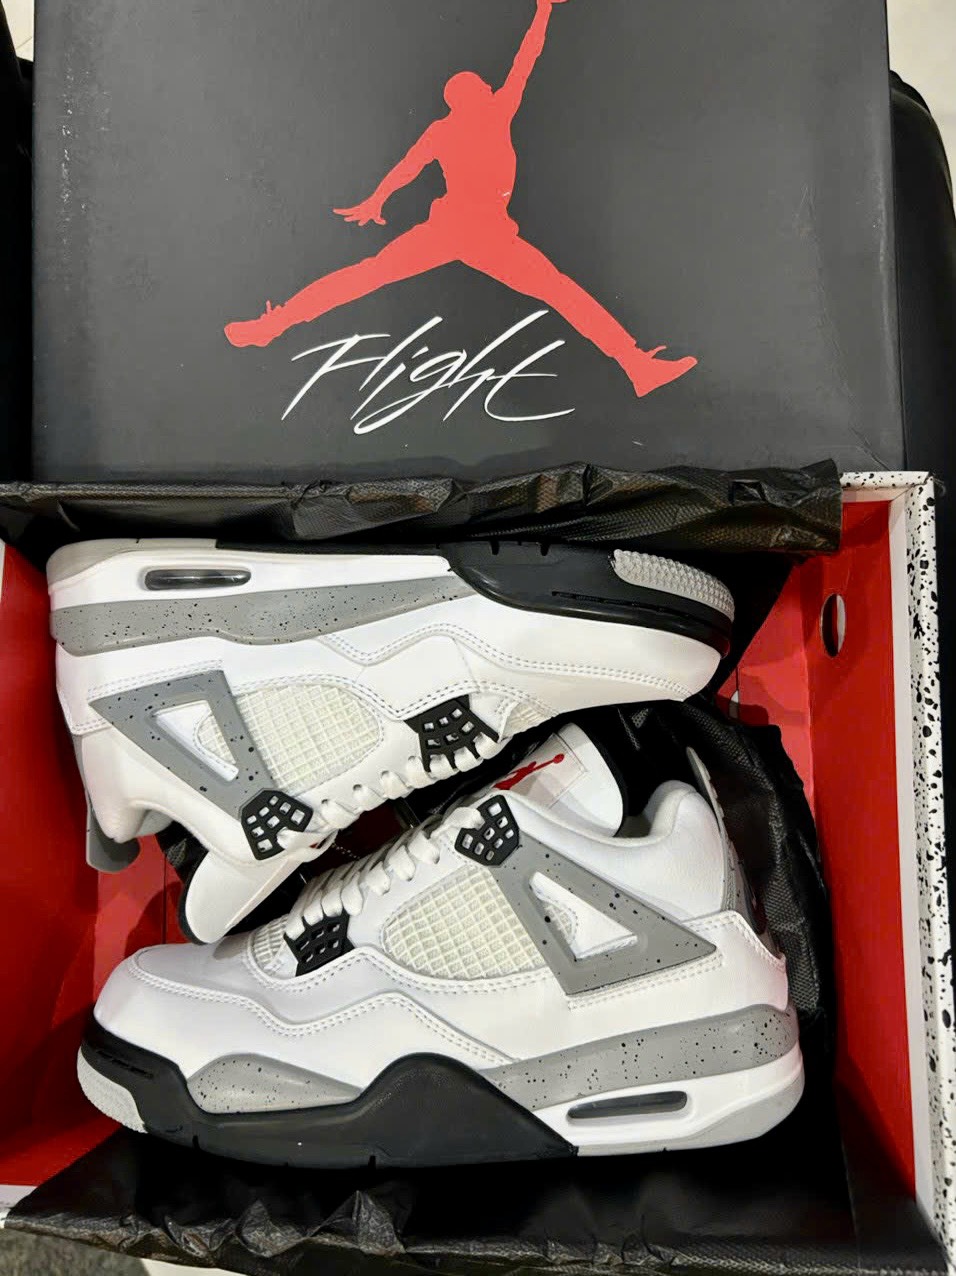 Giày Nike Air Jordan 4 Retro OG White Cement Best Quality